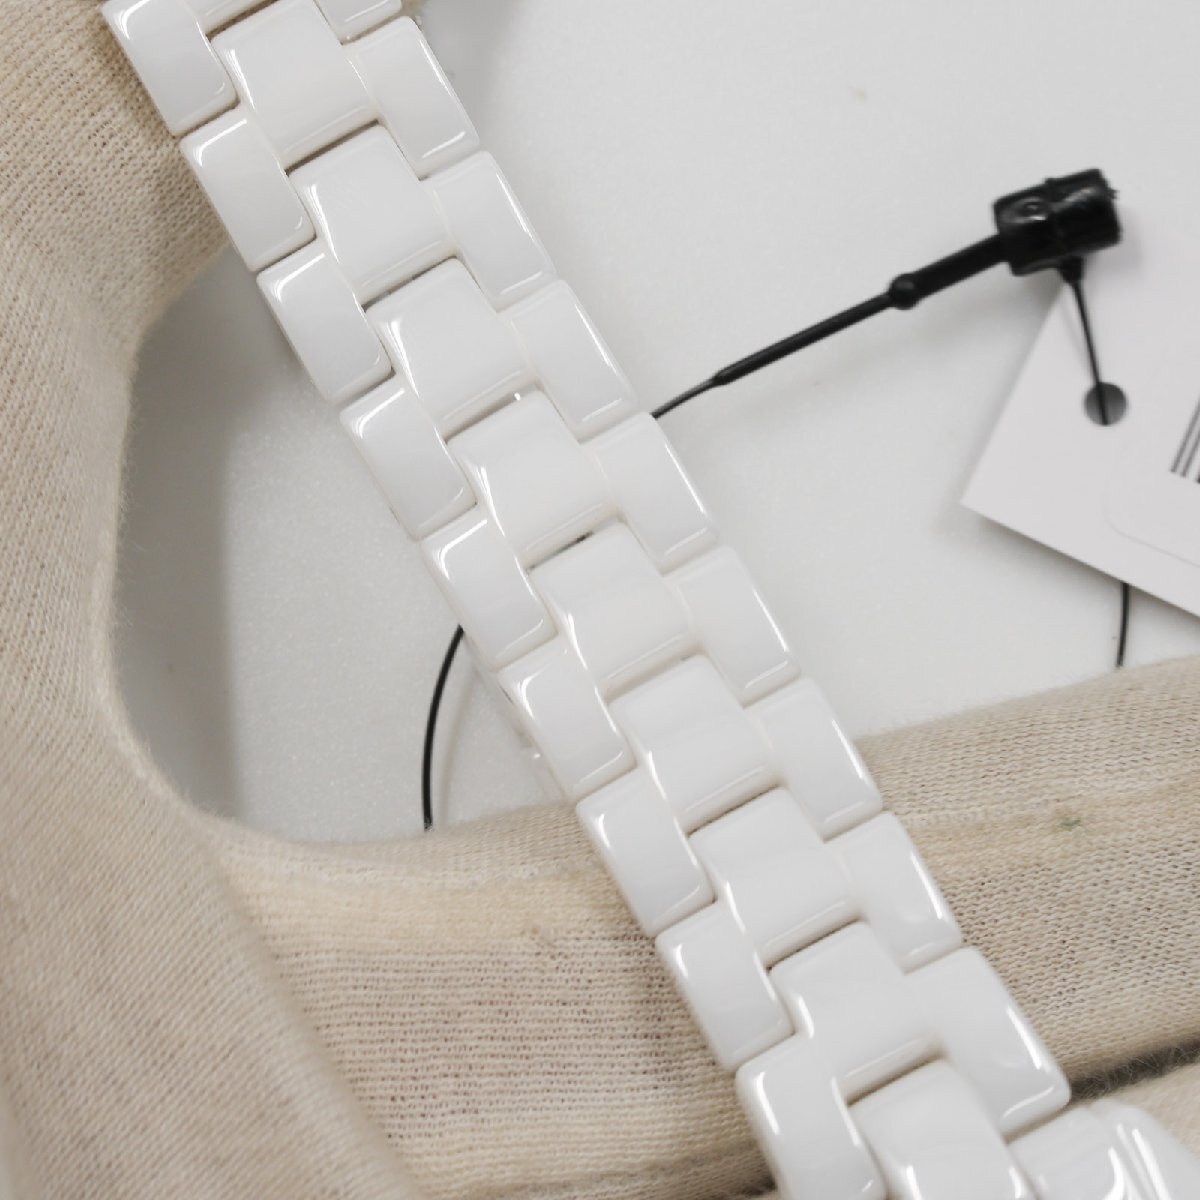  Tecnos TECHNOS наручные часы T9924TW J12 модель белый керамика кварц женский не использовался товар [ качество iko-]